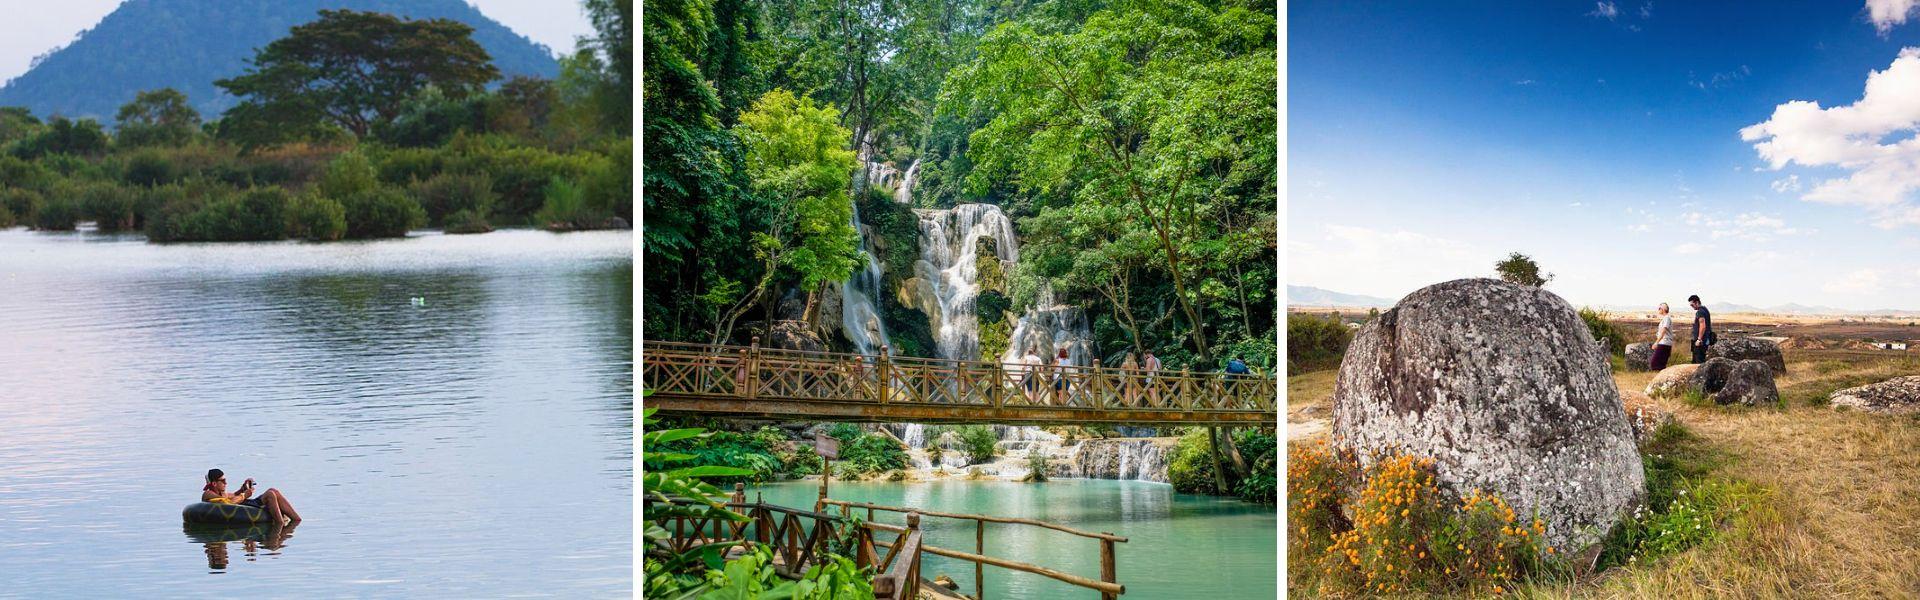 Alla scoperta della natura in Laos